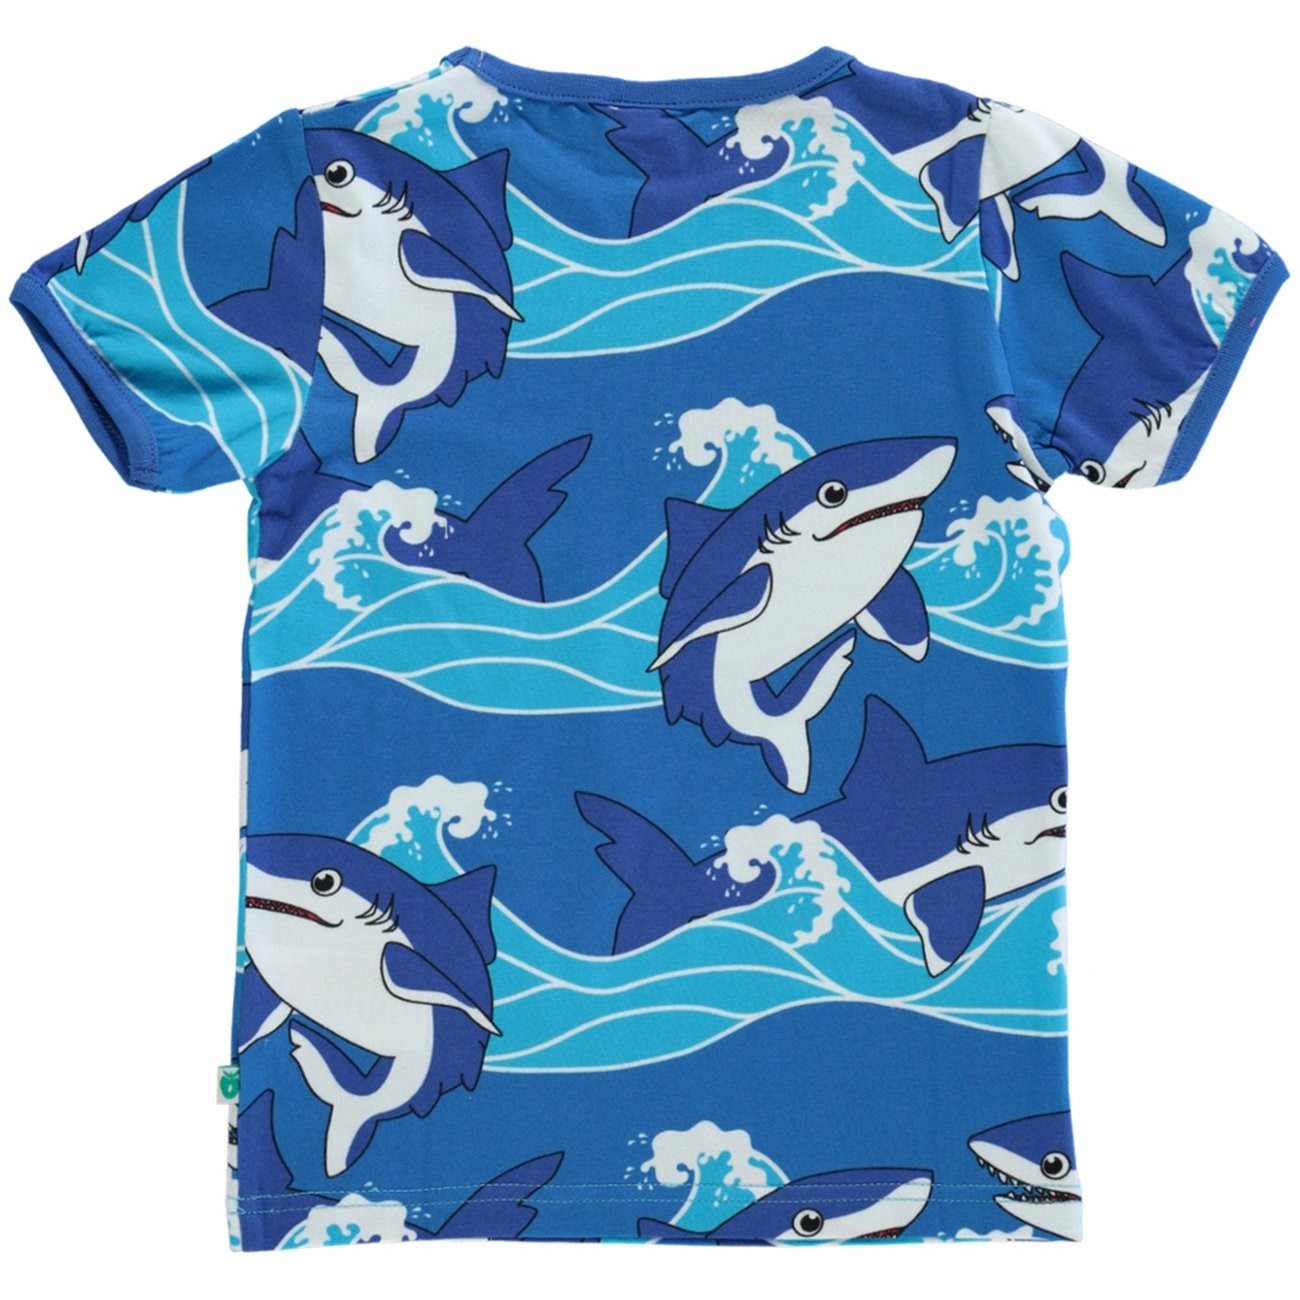 Småfolk Brilliant Blue T-Shirt Med Hajer 5